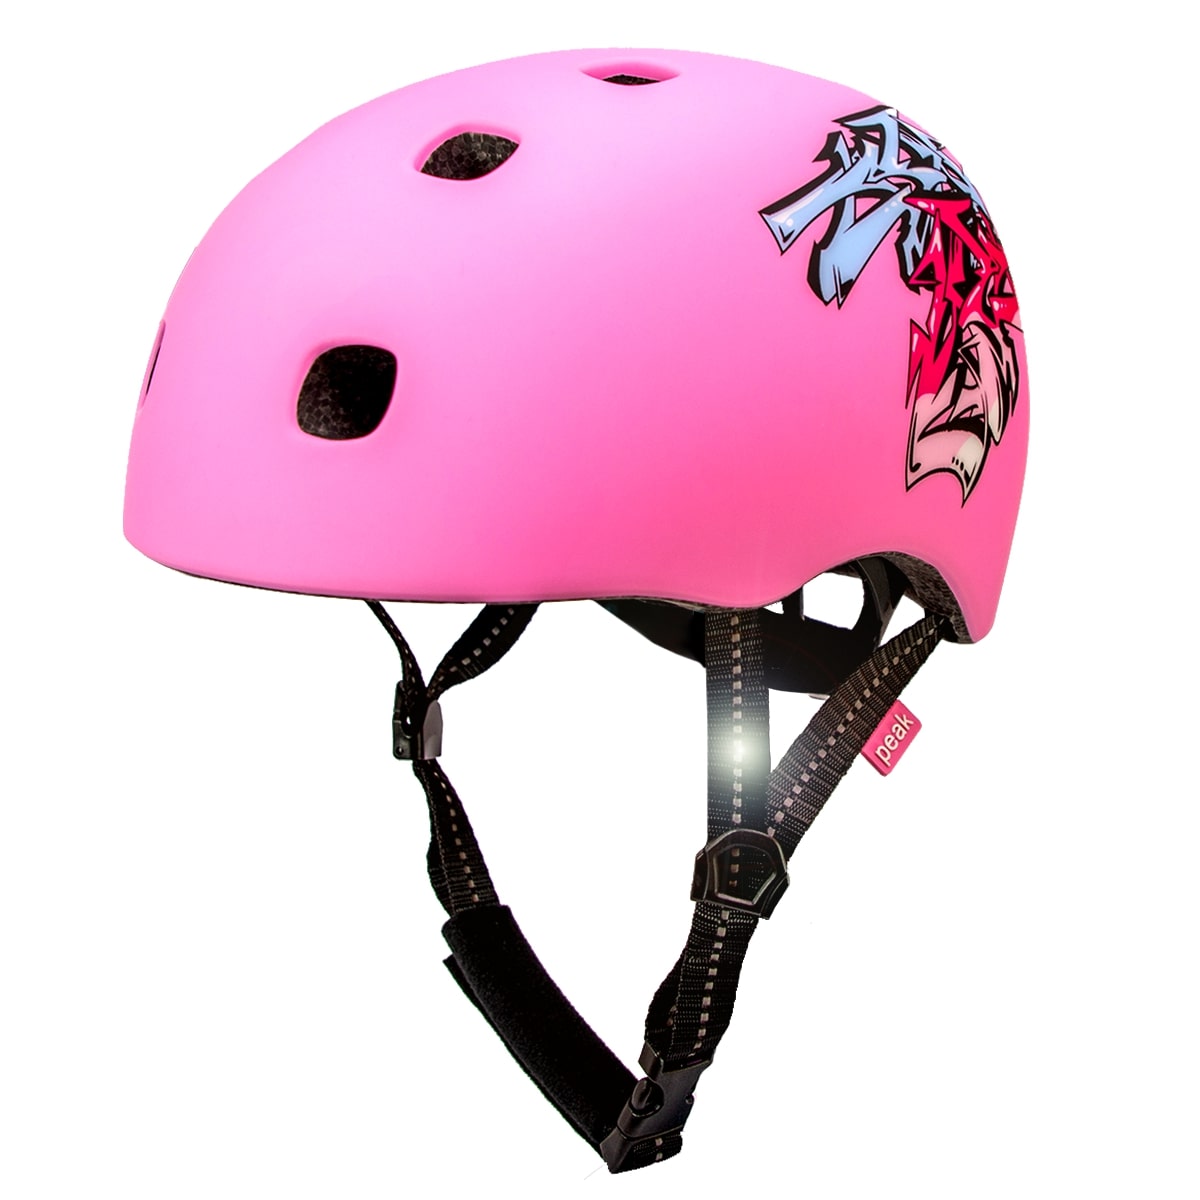 Se Crazy Safety pink in-mould Skater cykelhjelm til teens & voksne. Testet, certificeret og godkendt EN1078 hos Crazy Safety